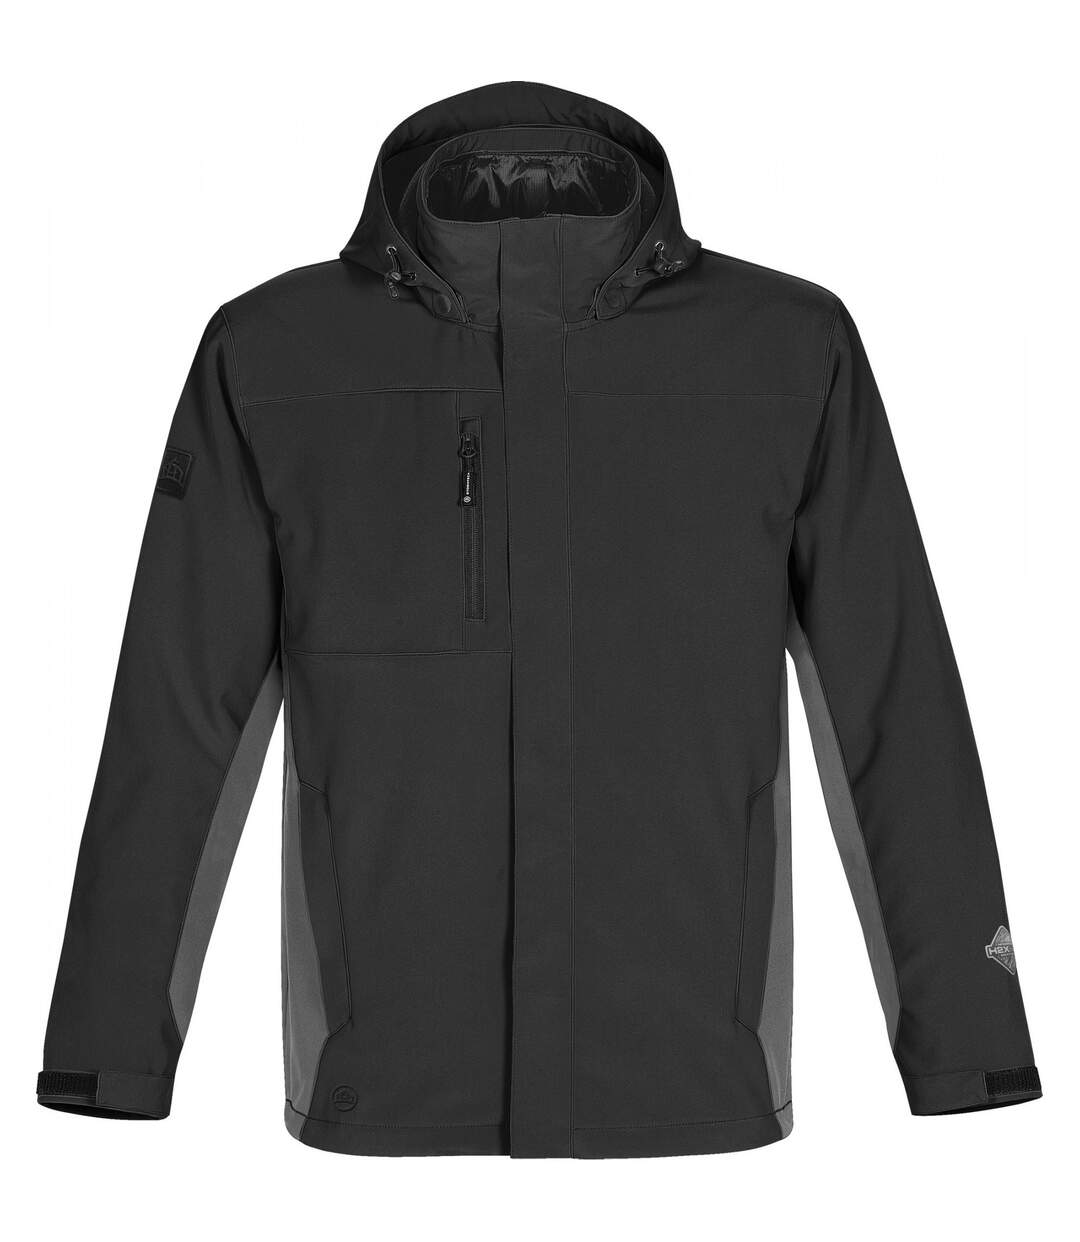 Stormtech Mens Atmosphere 3-in-1 Performance Jacket (Waterproof & Breathable) (Black/Granite)